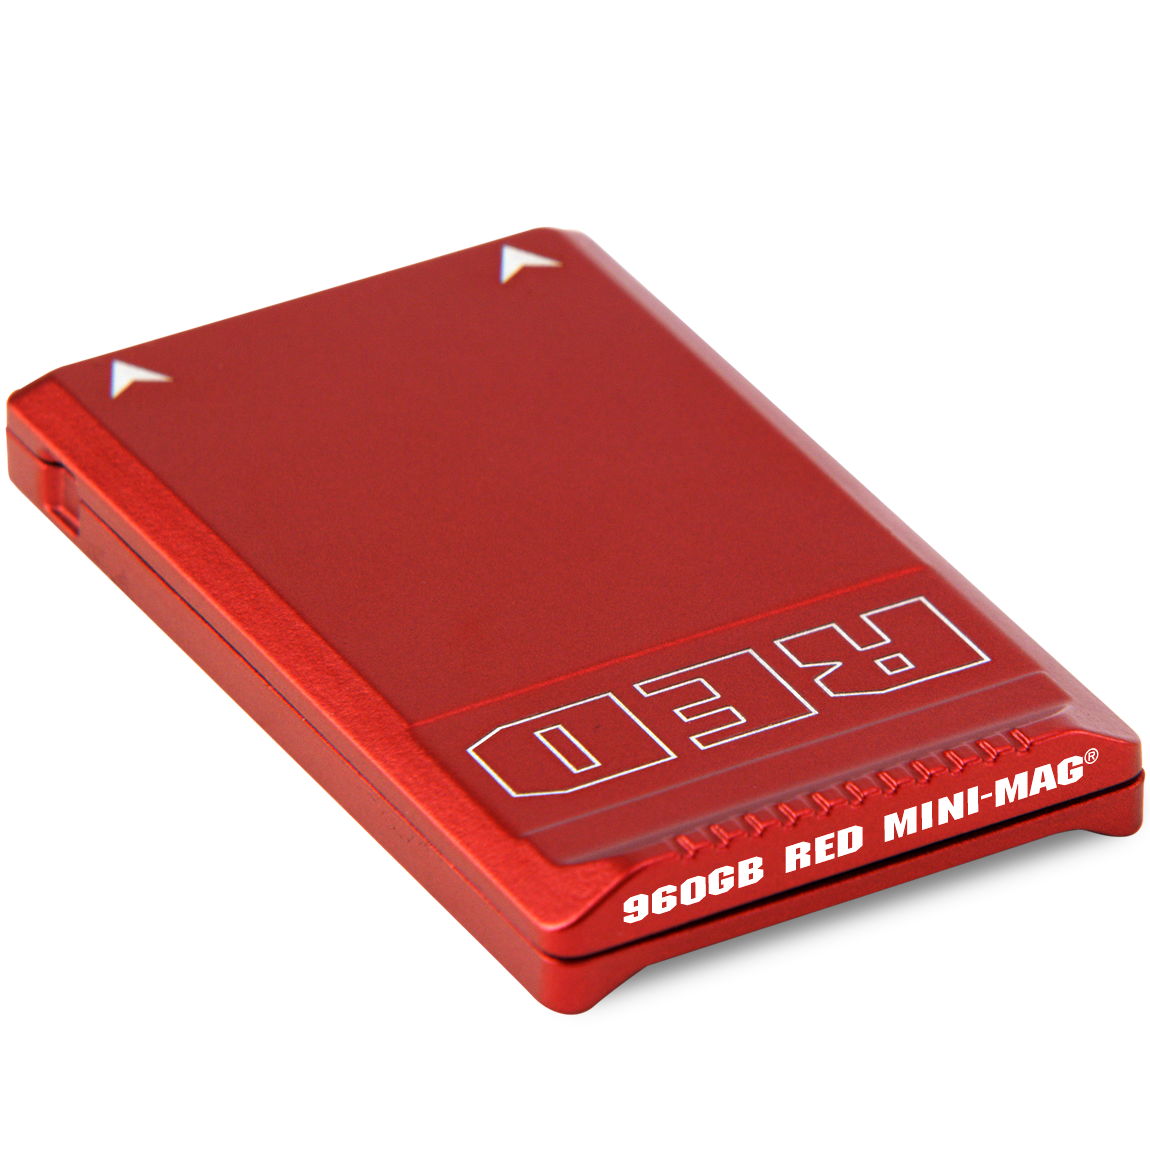 Red Mini-Mag 960GB